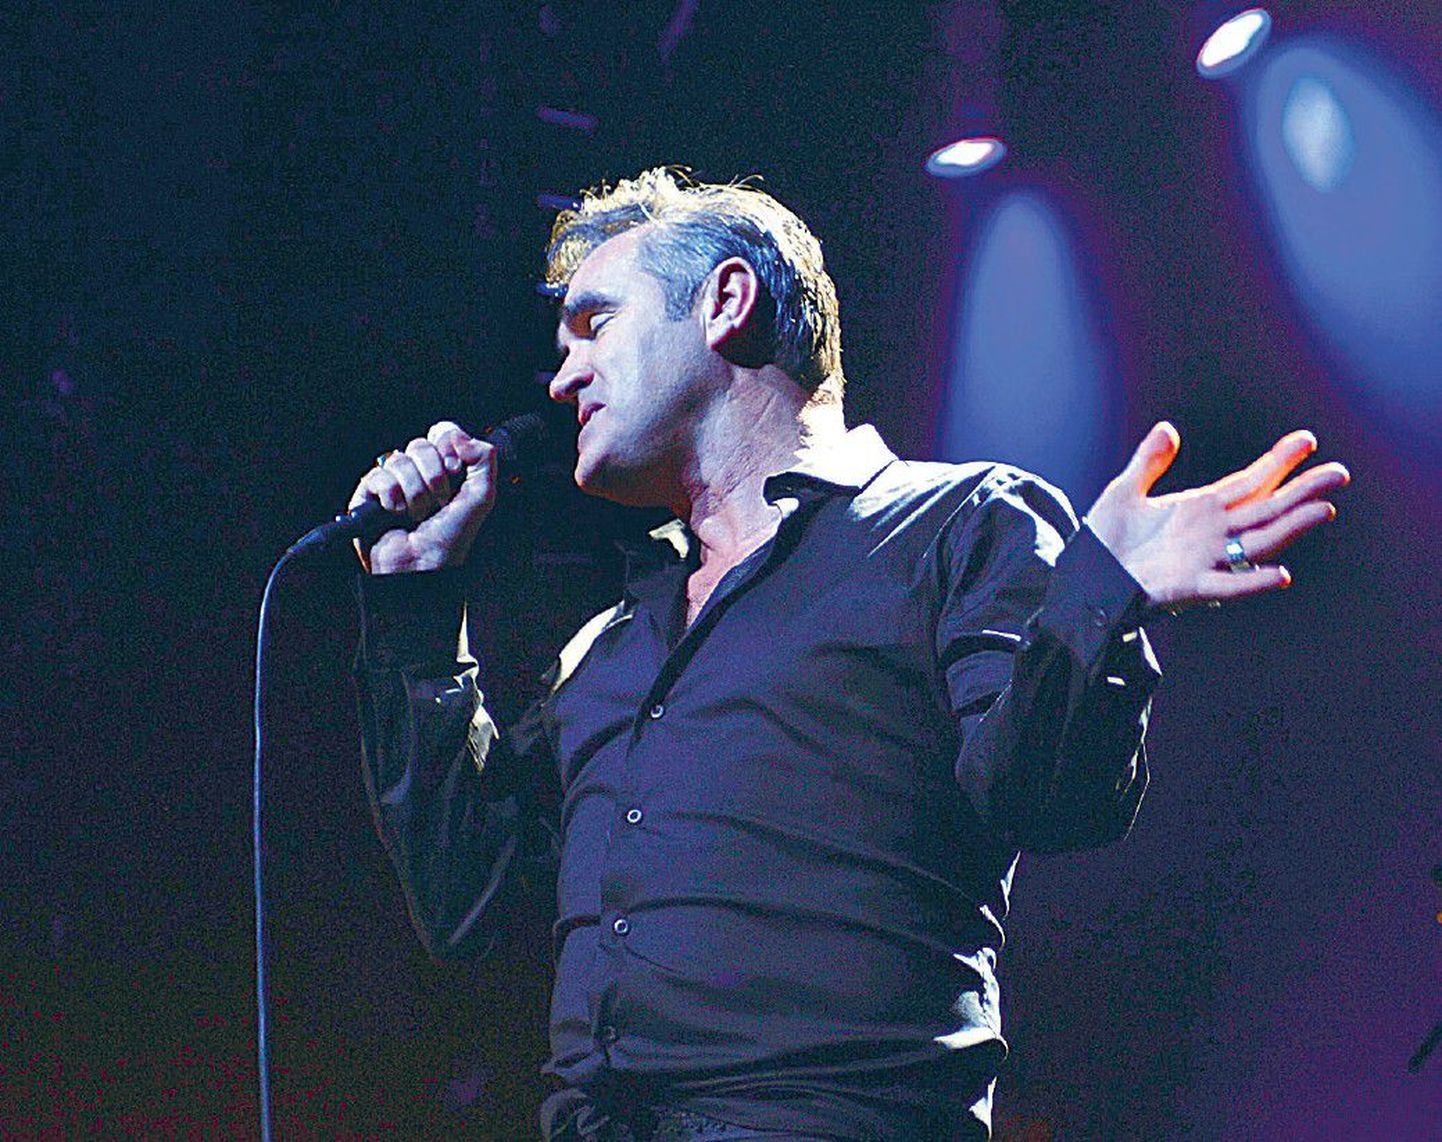 Briti roki suurimaid staare Morrissey tuleb suvel Tallinna.